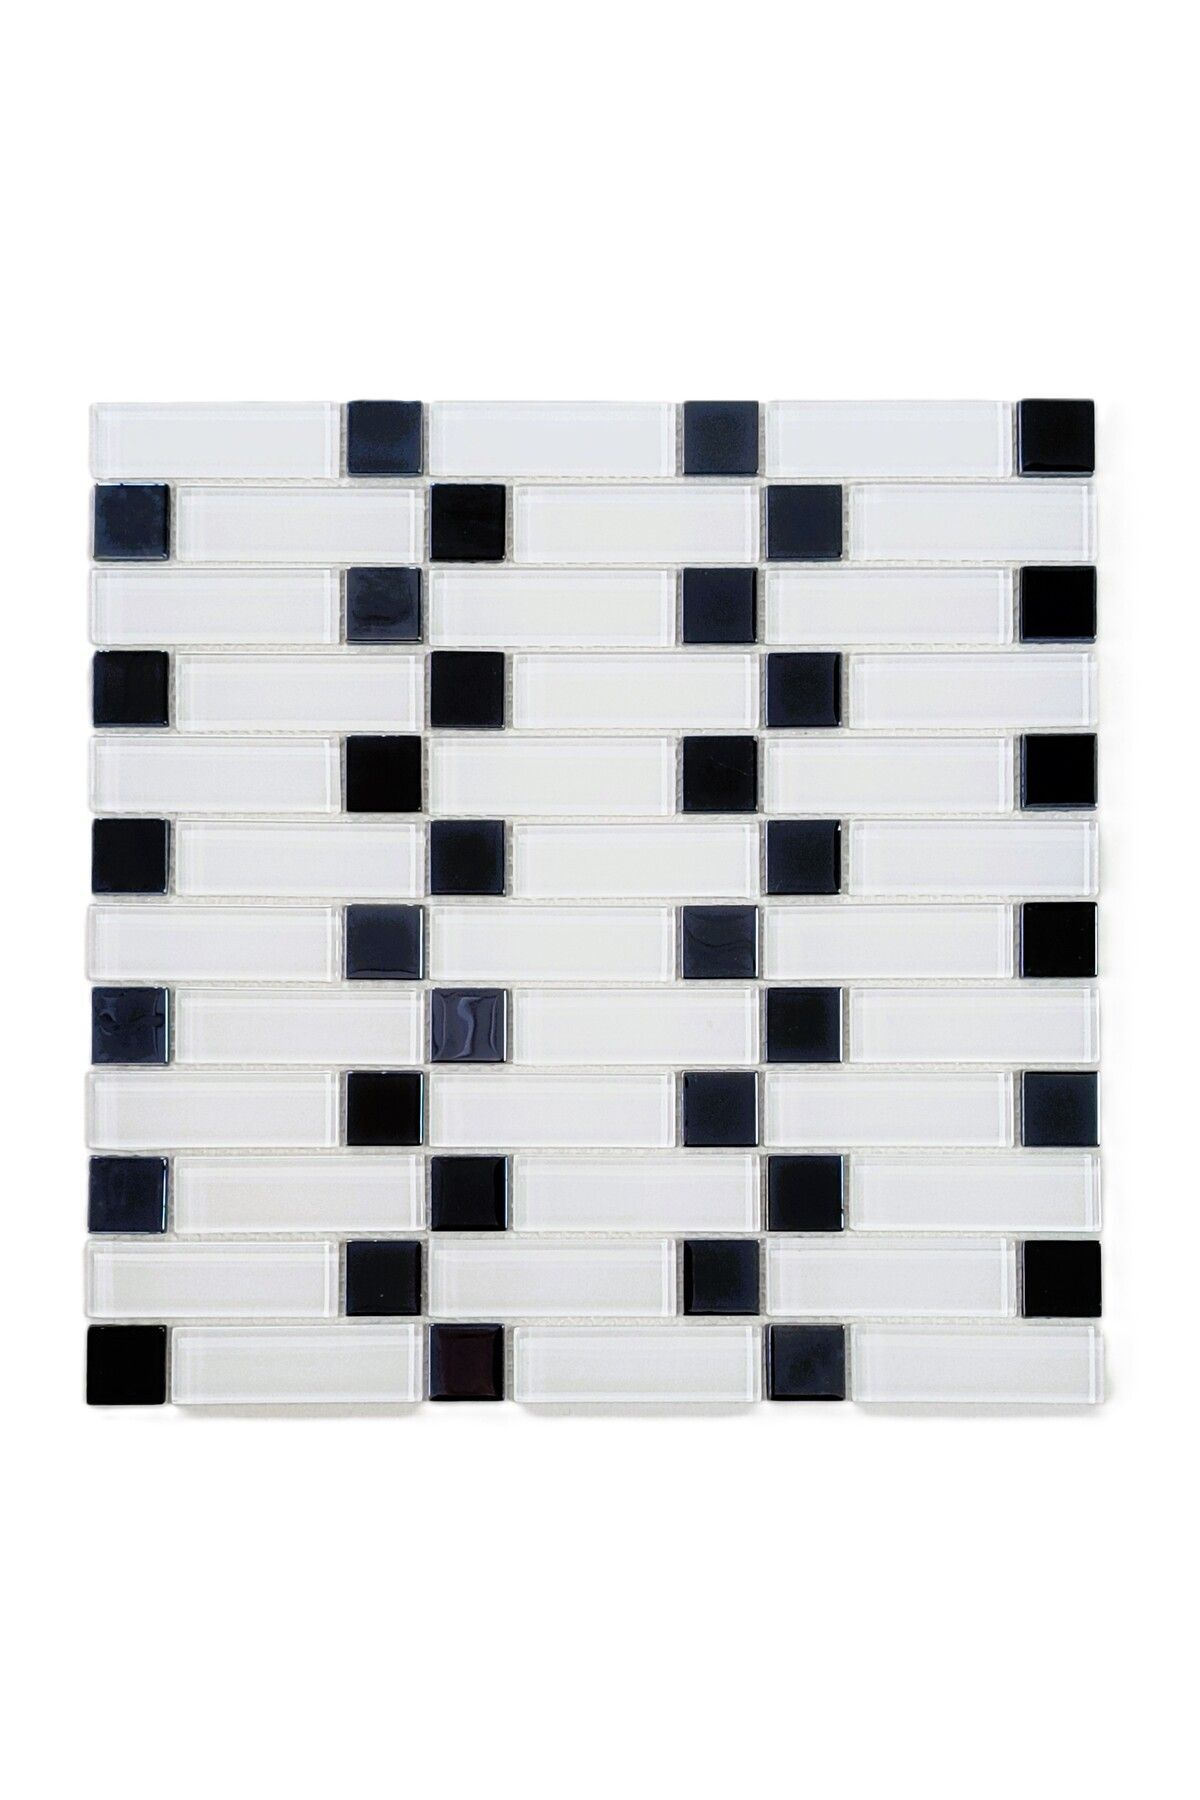 MozaiKristaL Mutfak Tezgah Arası Ve Iç Dekorasyon Için 23x73 Mm Fileli Kristal Cam Mozaik. ( 1 M2 Fiyatıdır )